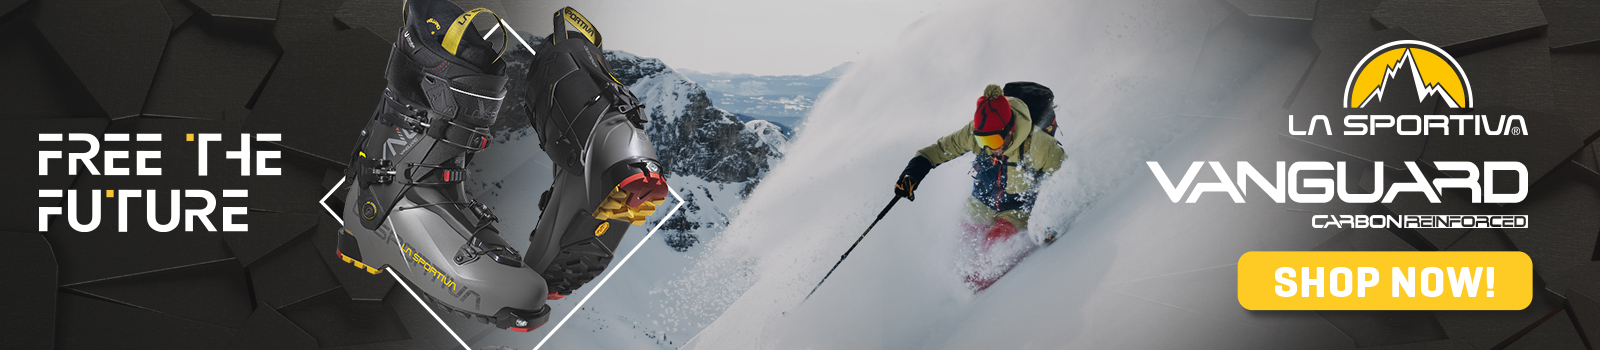 La Sportiva Vanguard scarponi scialpinismo